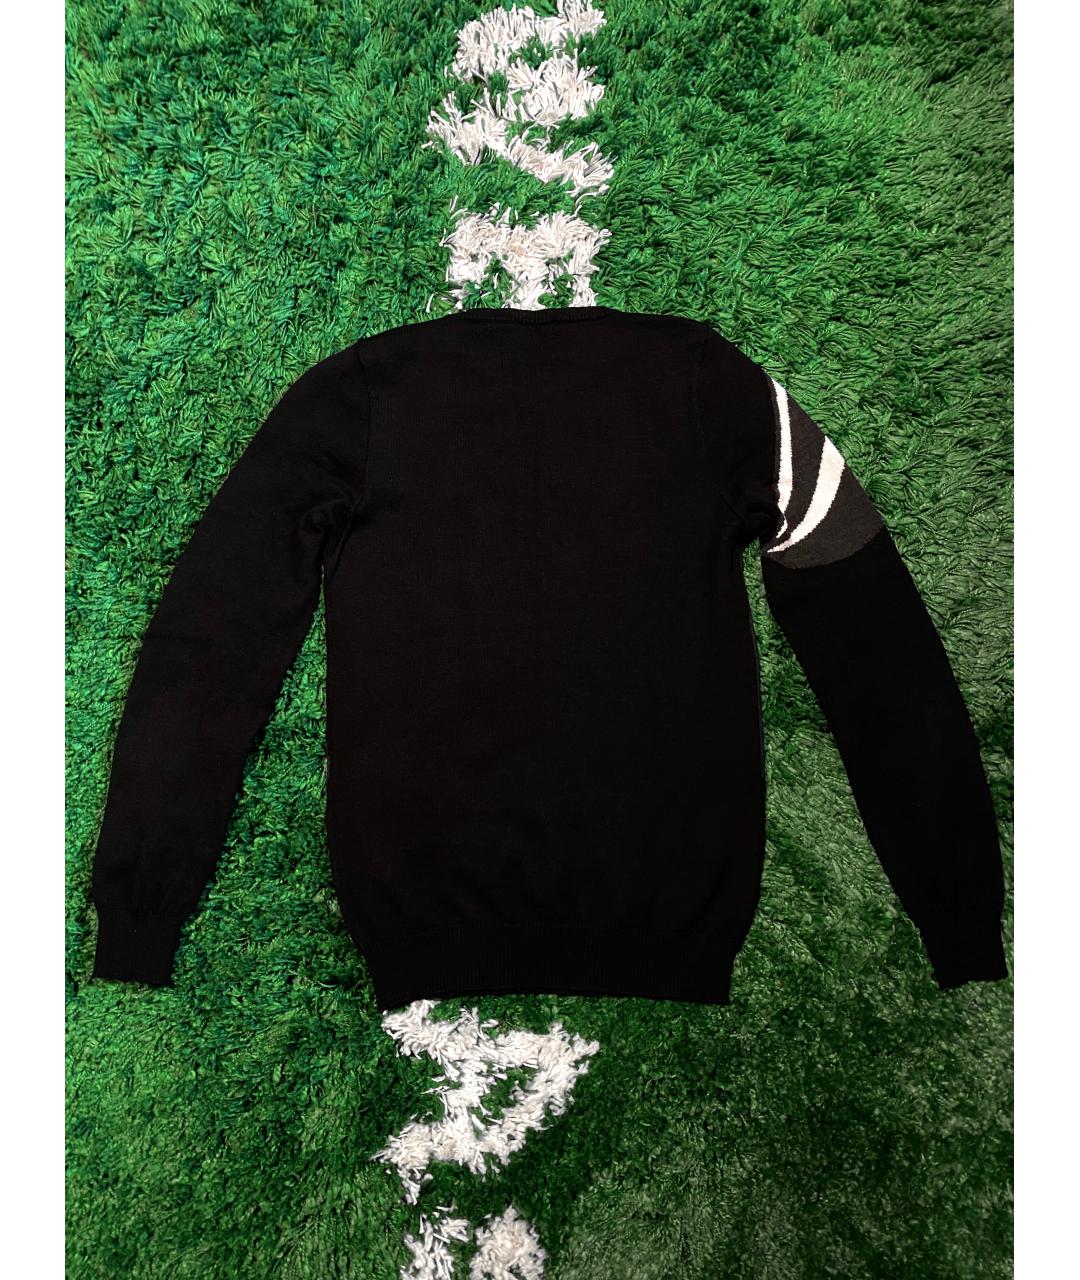 ICEBERG Черный шерстяной джемпер / свитер, фото 3